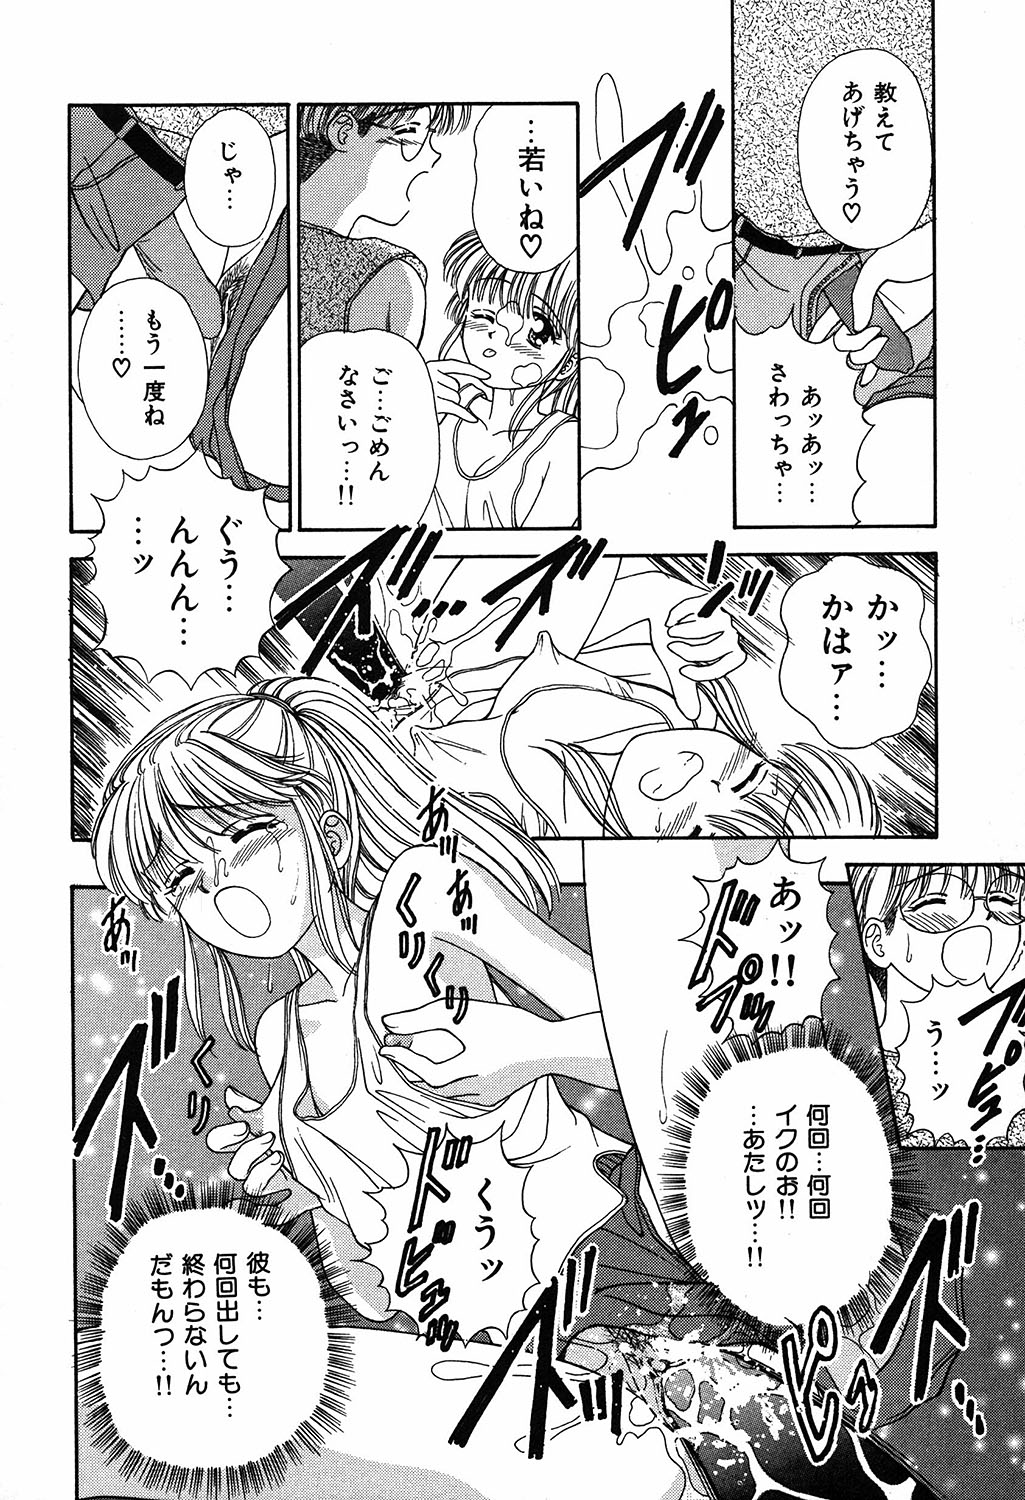 [Ayumi] Daisuki page 20 full